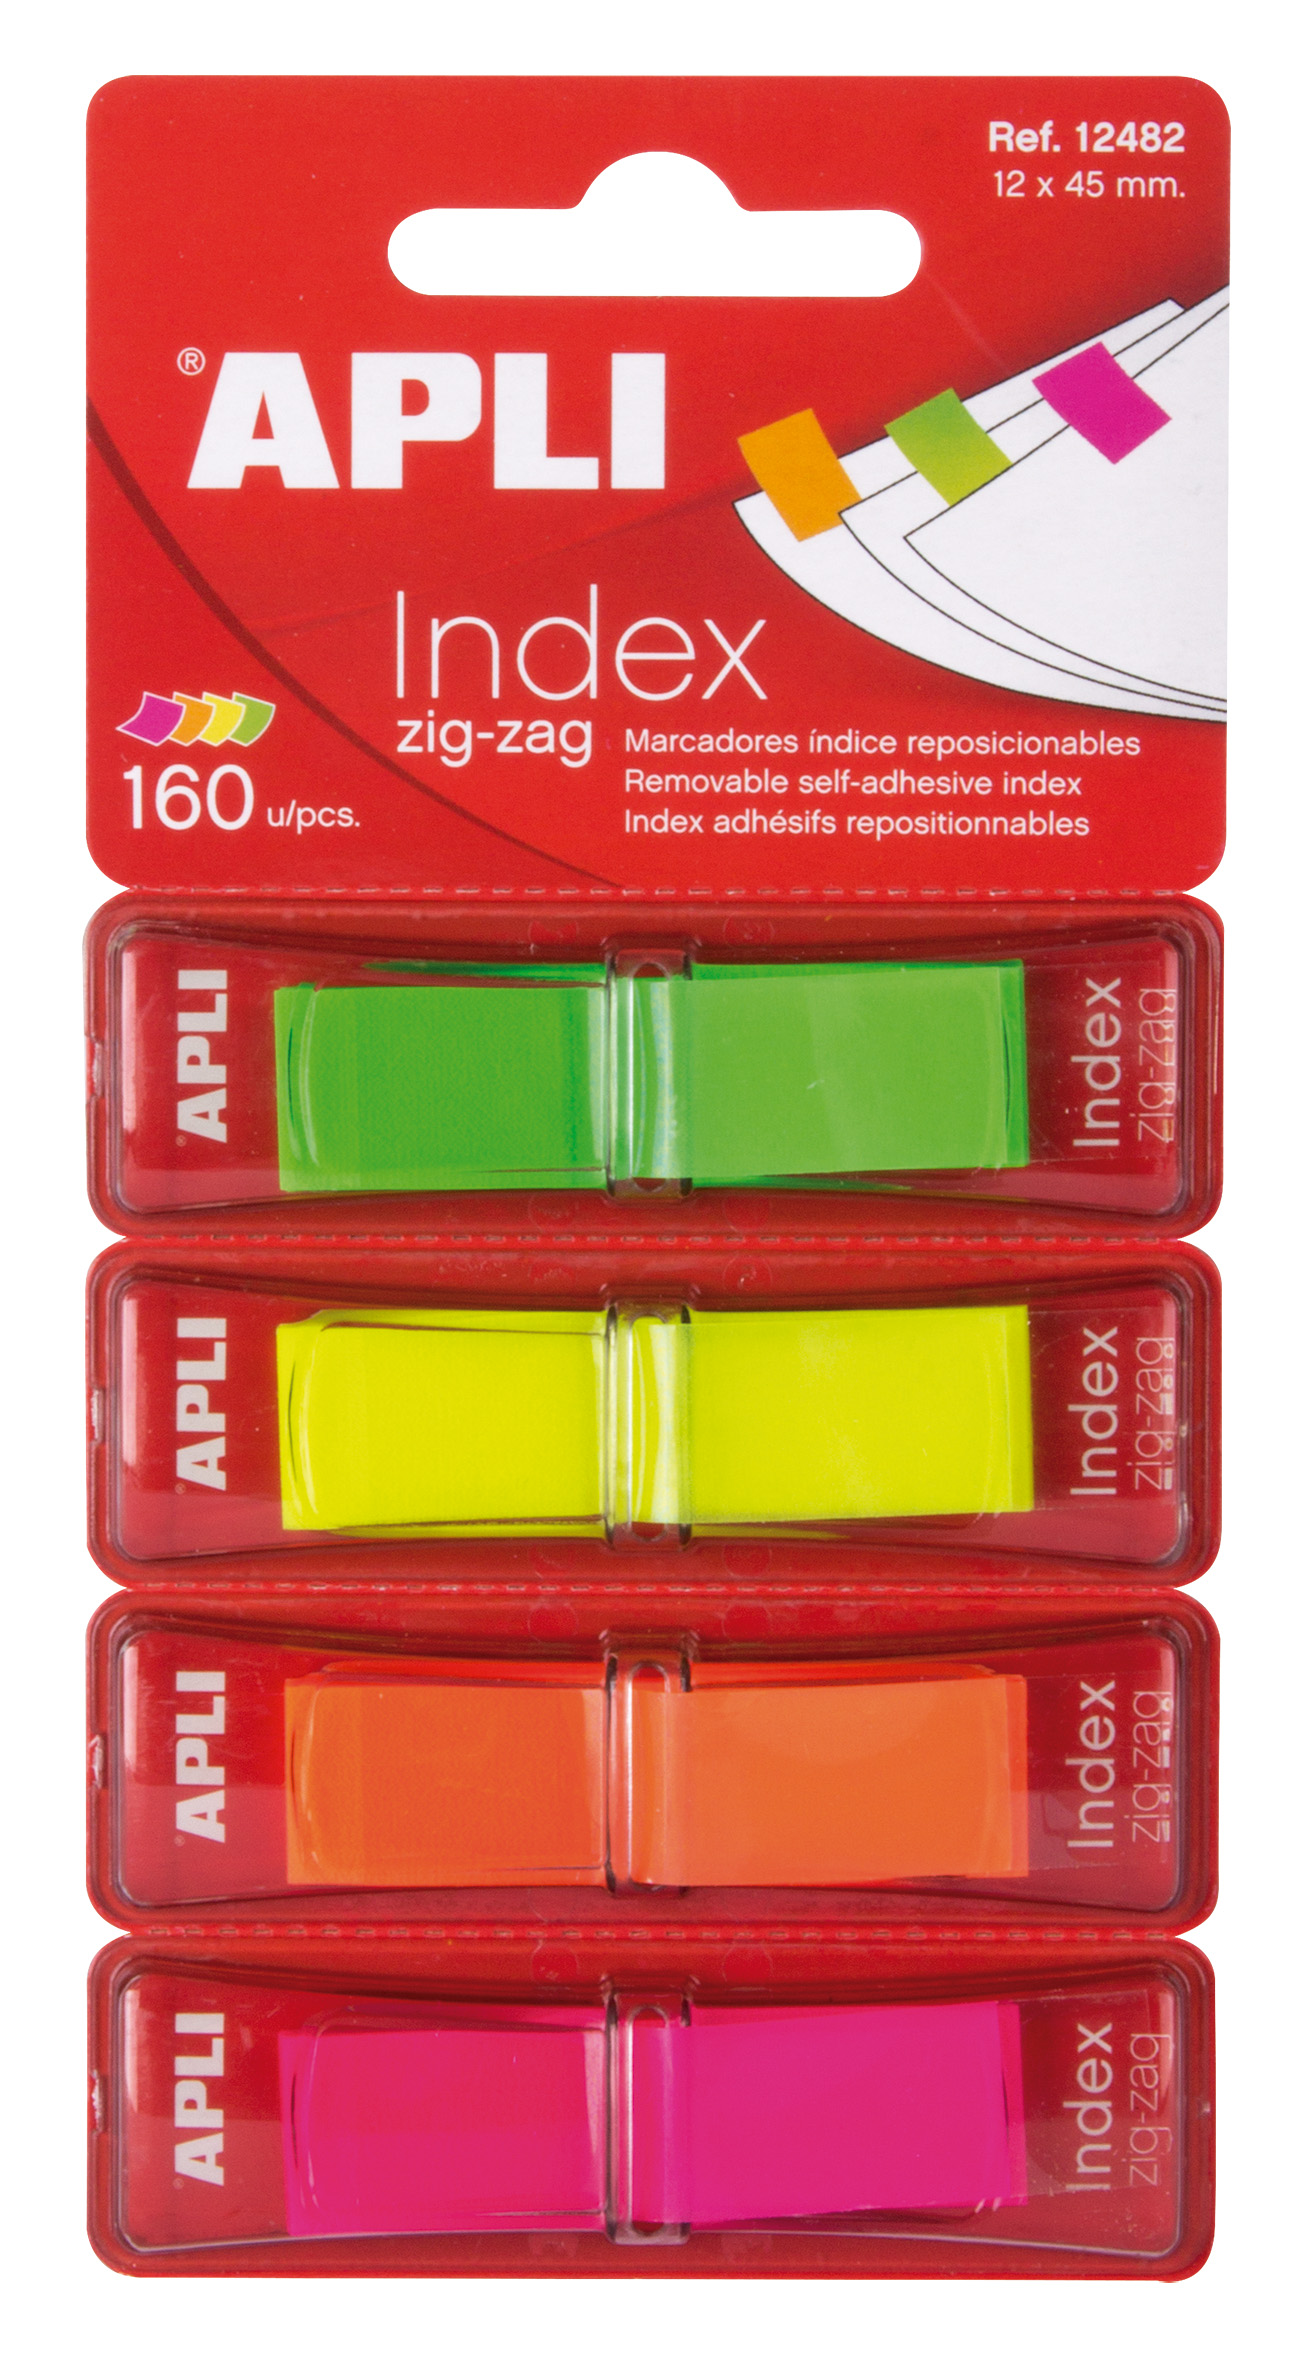 Apli Zigzag Film Index Adhésifs 45x12mm 4 Distributeurs de 40 Index - Facile à Appliquer - Résistant - Amovible - Couleurs Fluorescentes - Multicolore